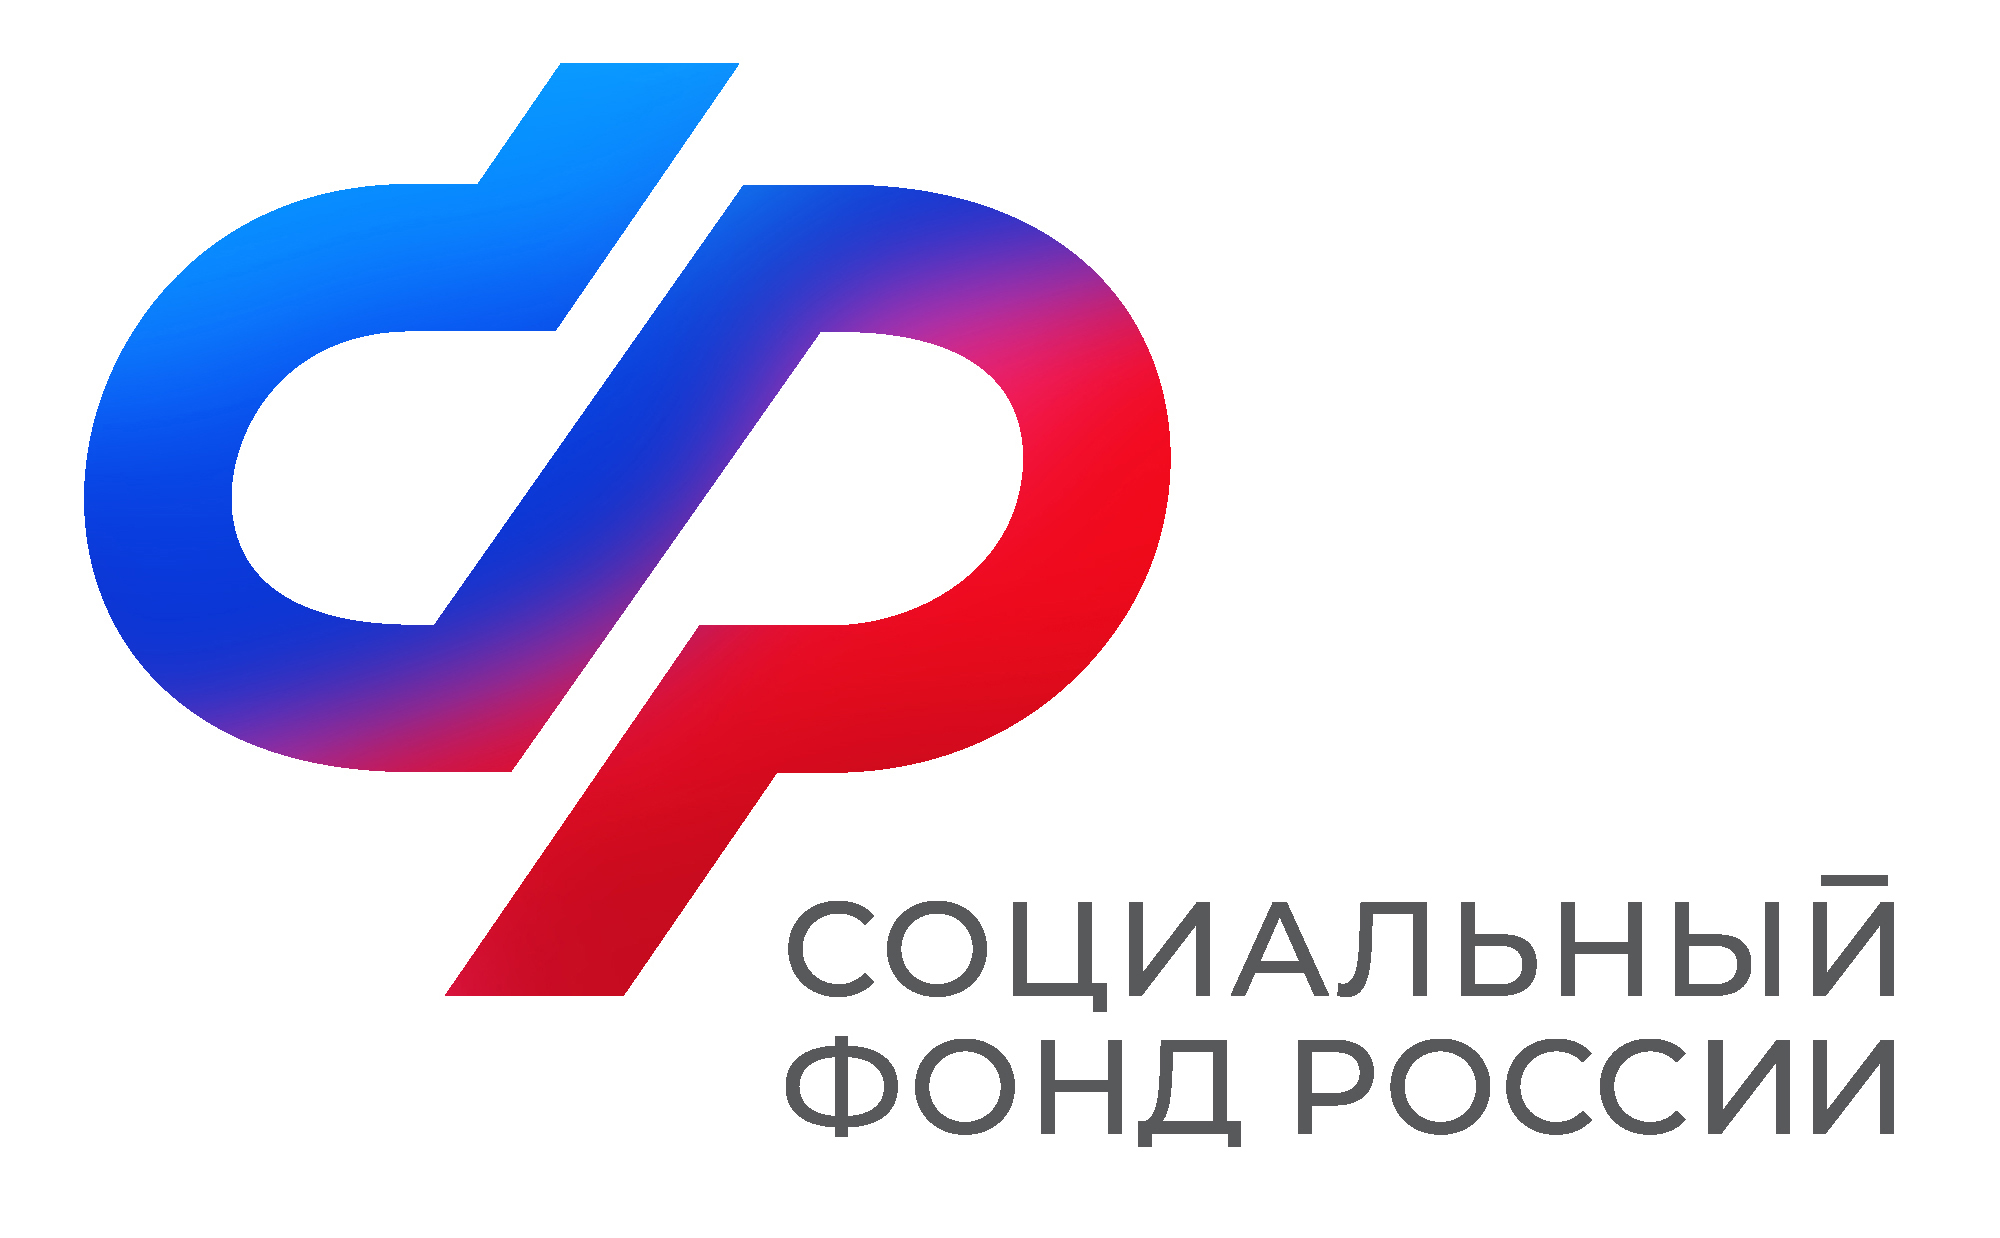 Сотрудники контакт–центра Отделения СФР по Новгородской области проконсультировали более 43 тысяч человек с начала 2024 года.